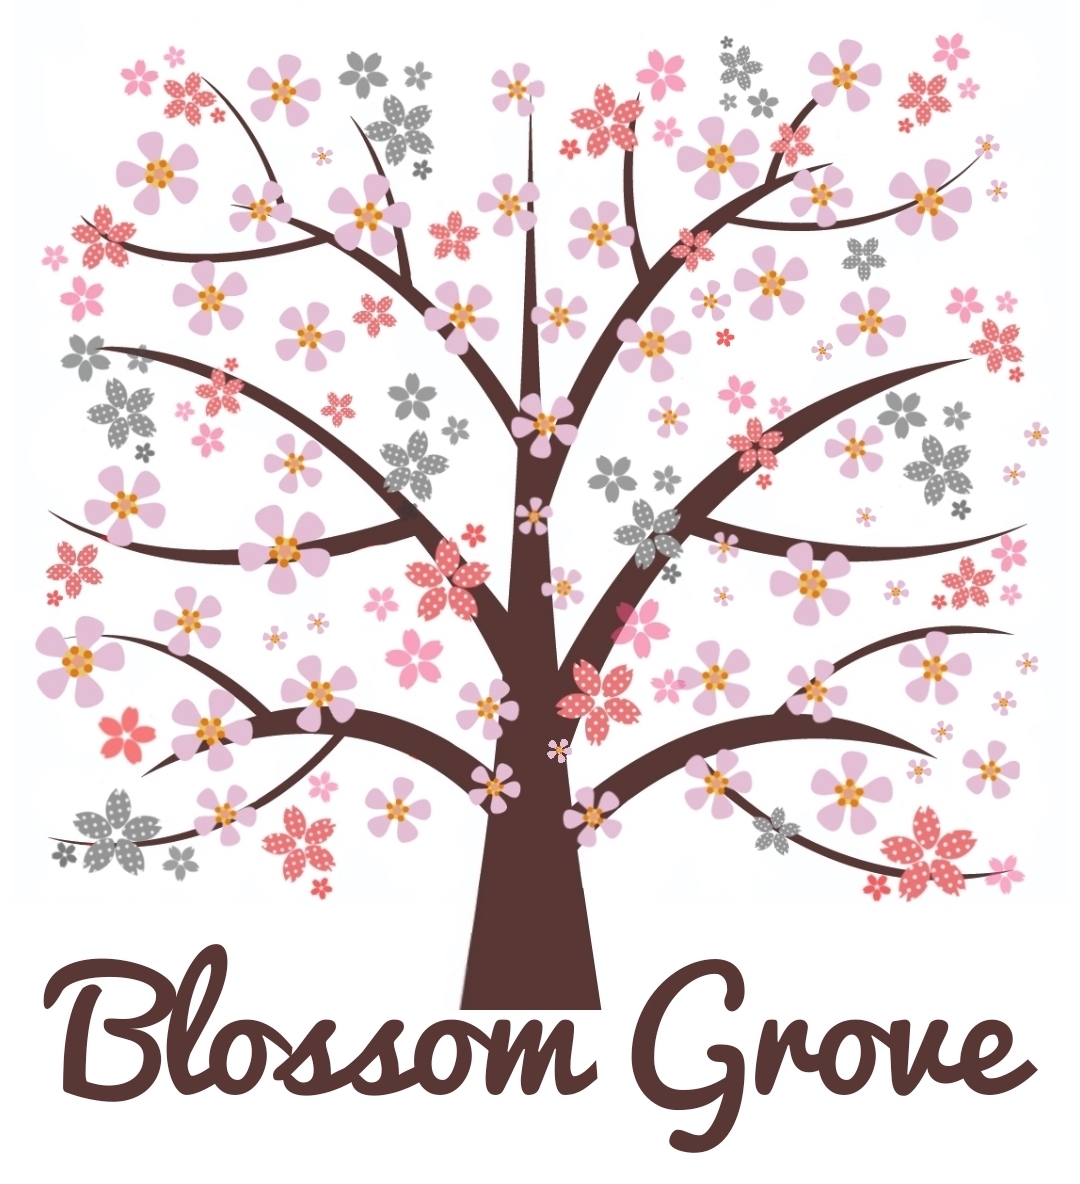 "Blossom Grove" logo of a pink blossom tree